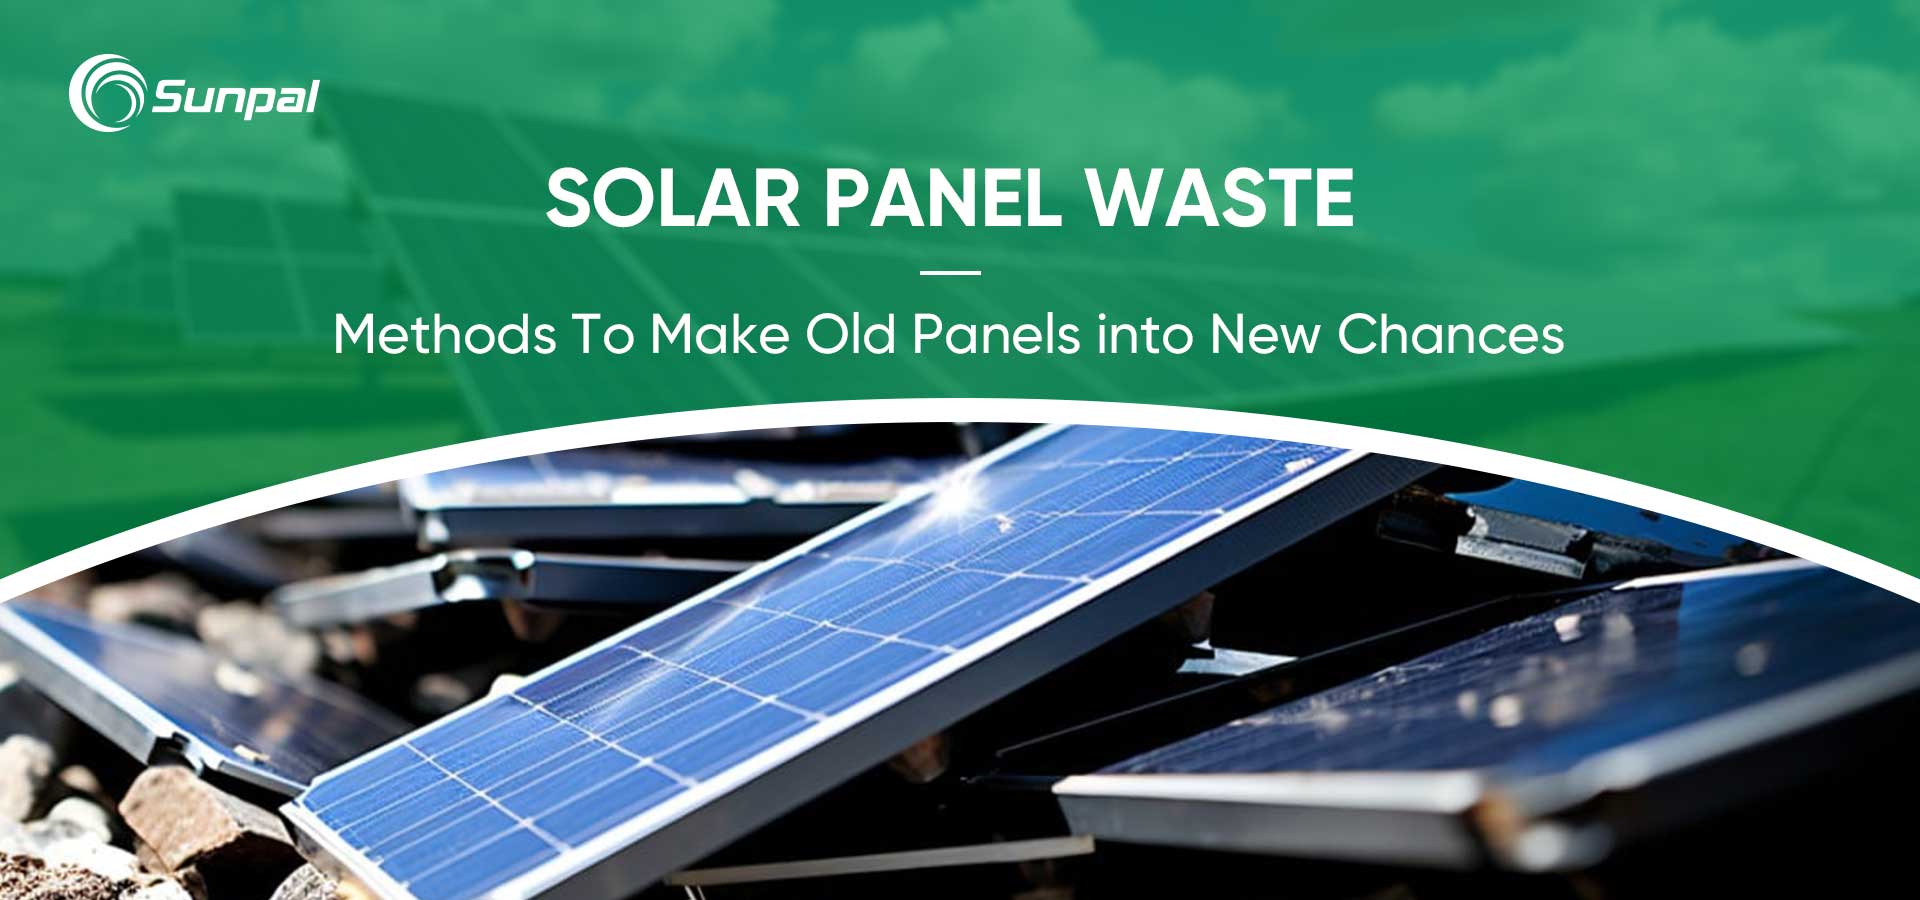 Переробка відходів сонячних панелей: перетворення старих панелей на нові можливості